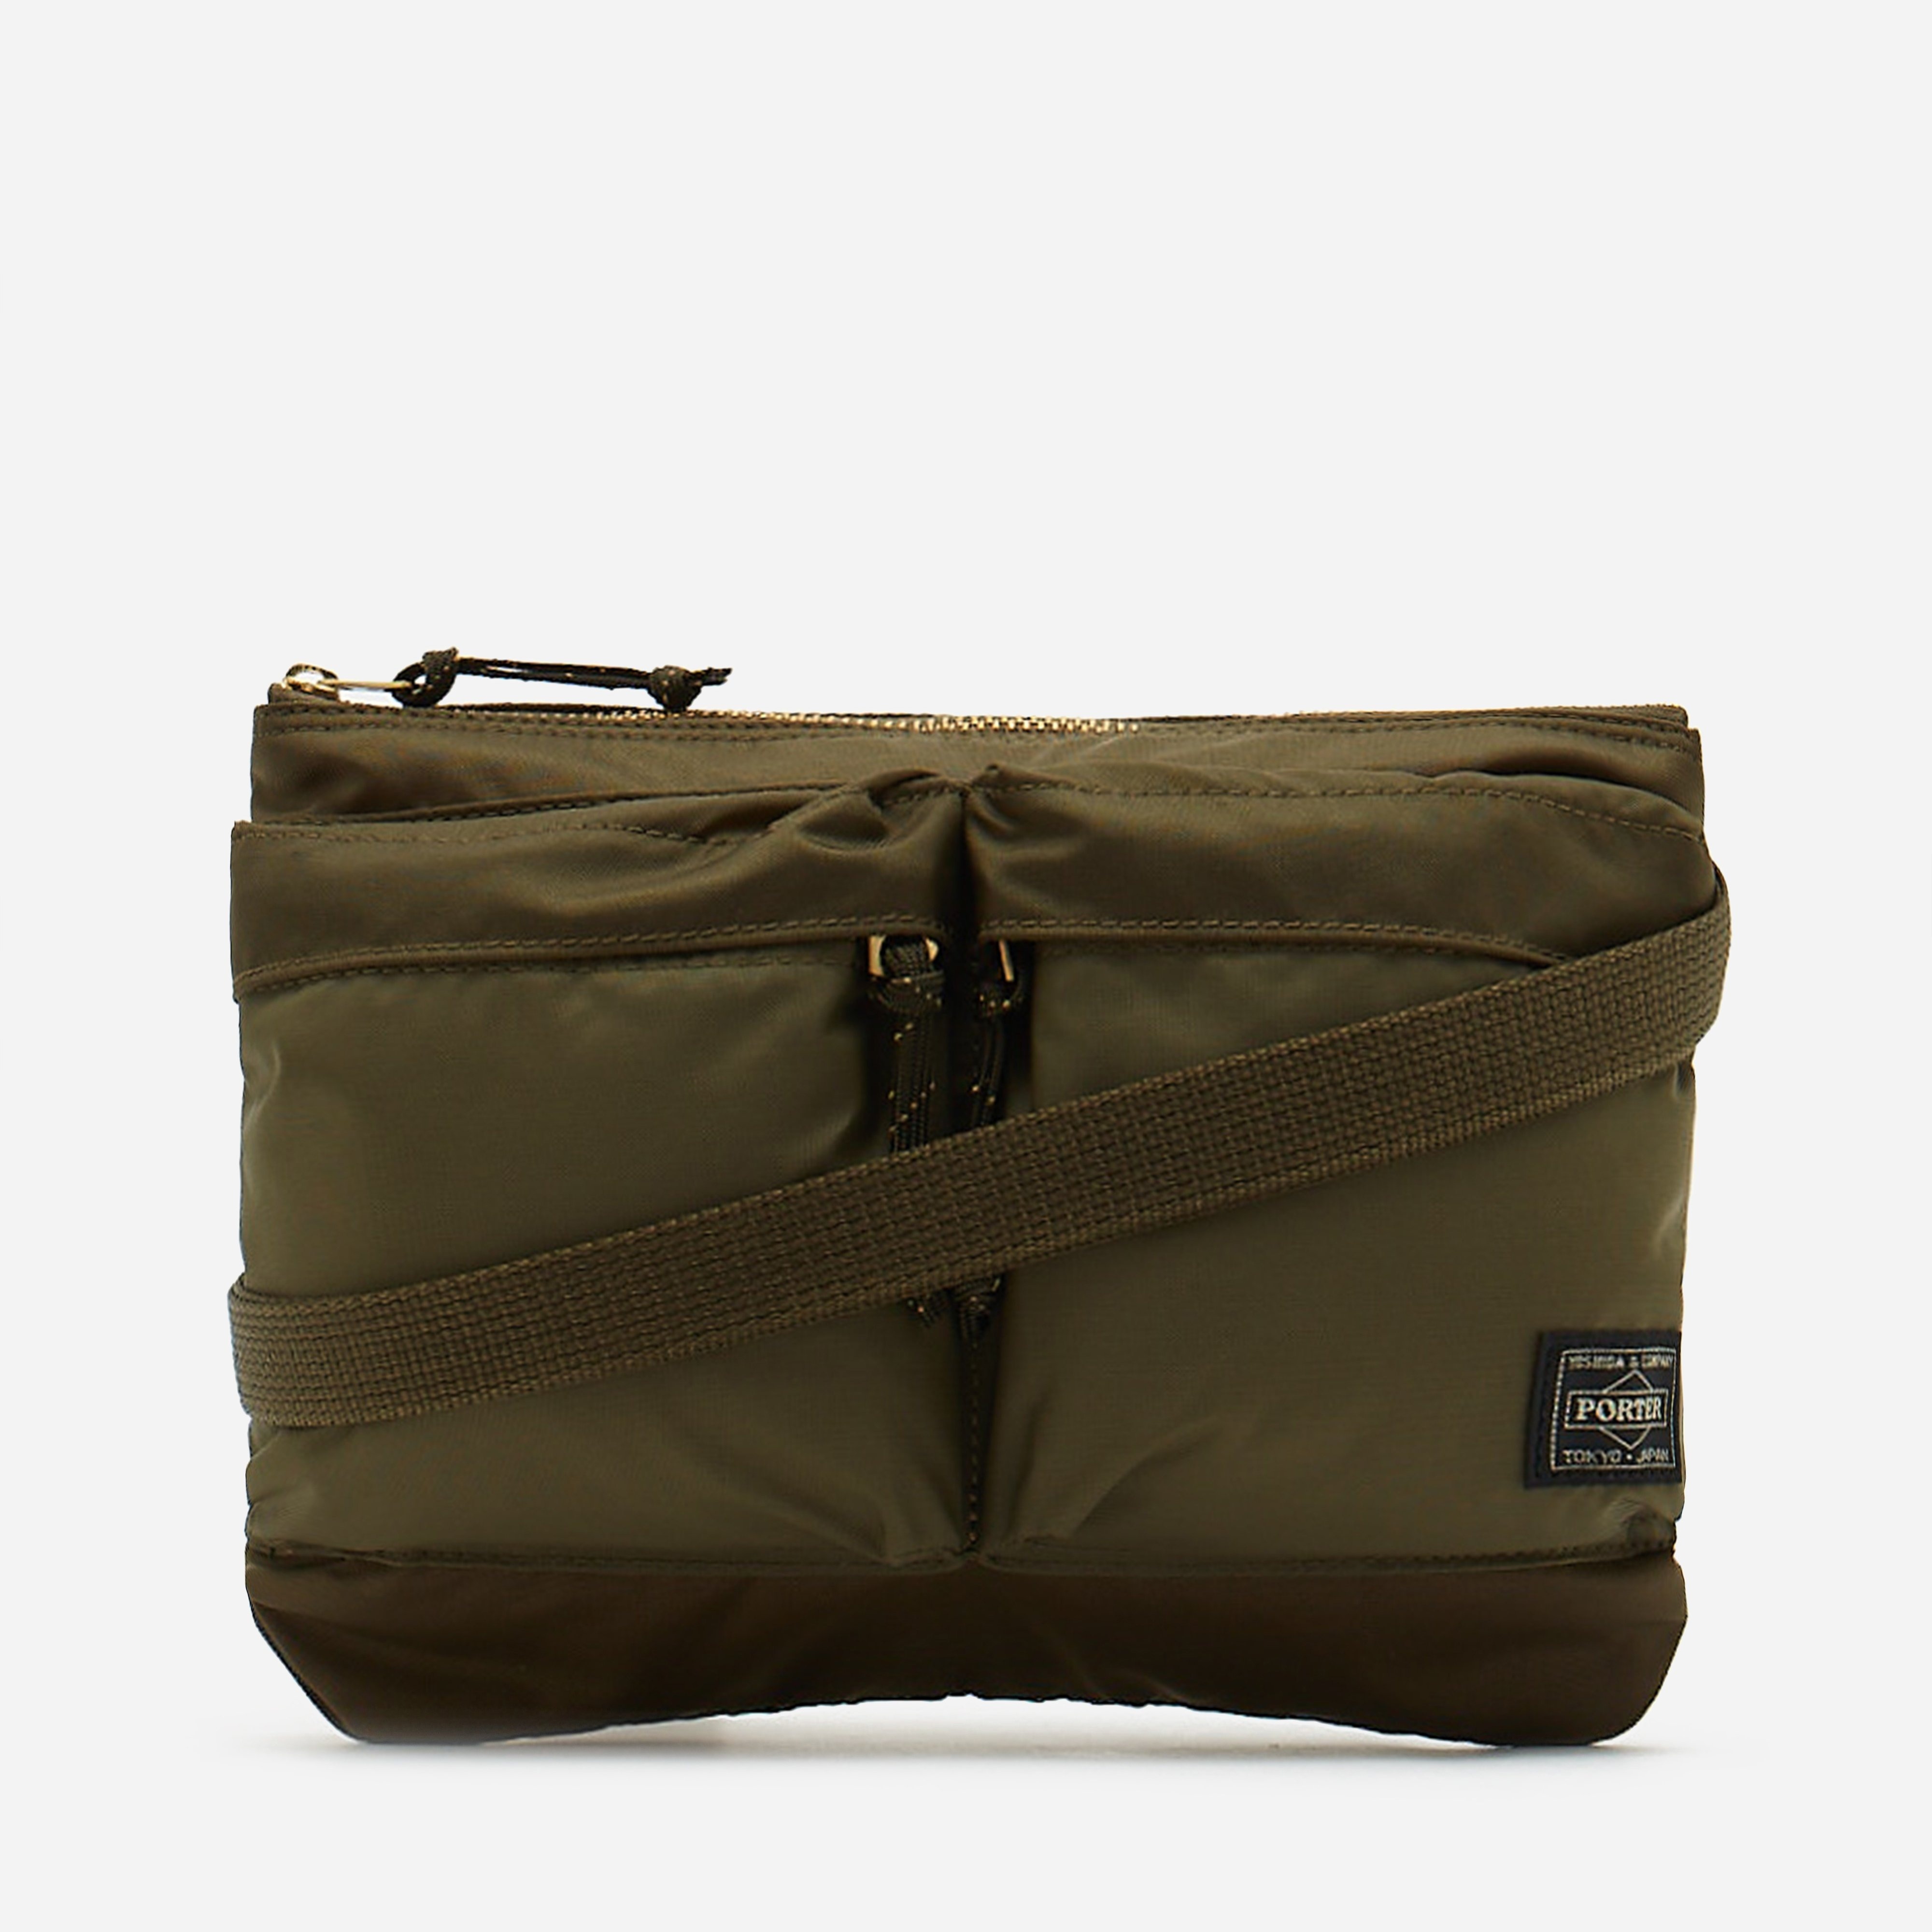 Porter-Yoshida & Co. Force Shoulder Bag - 1